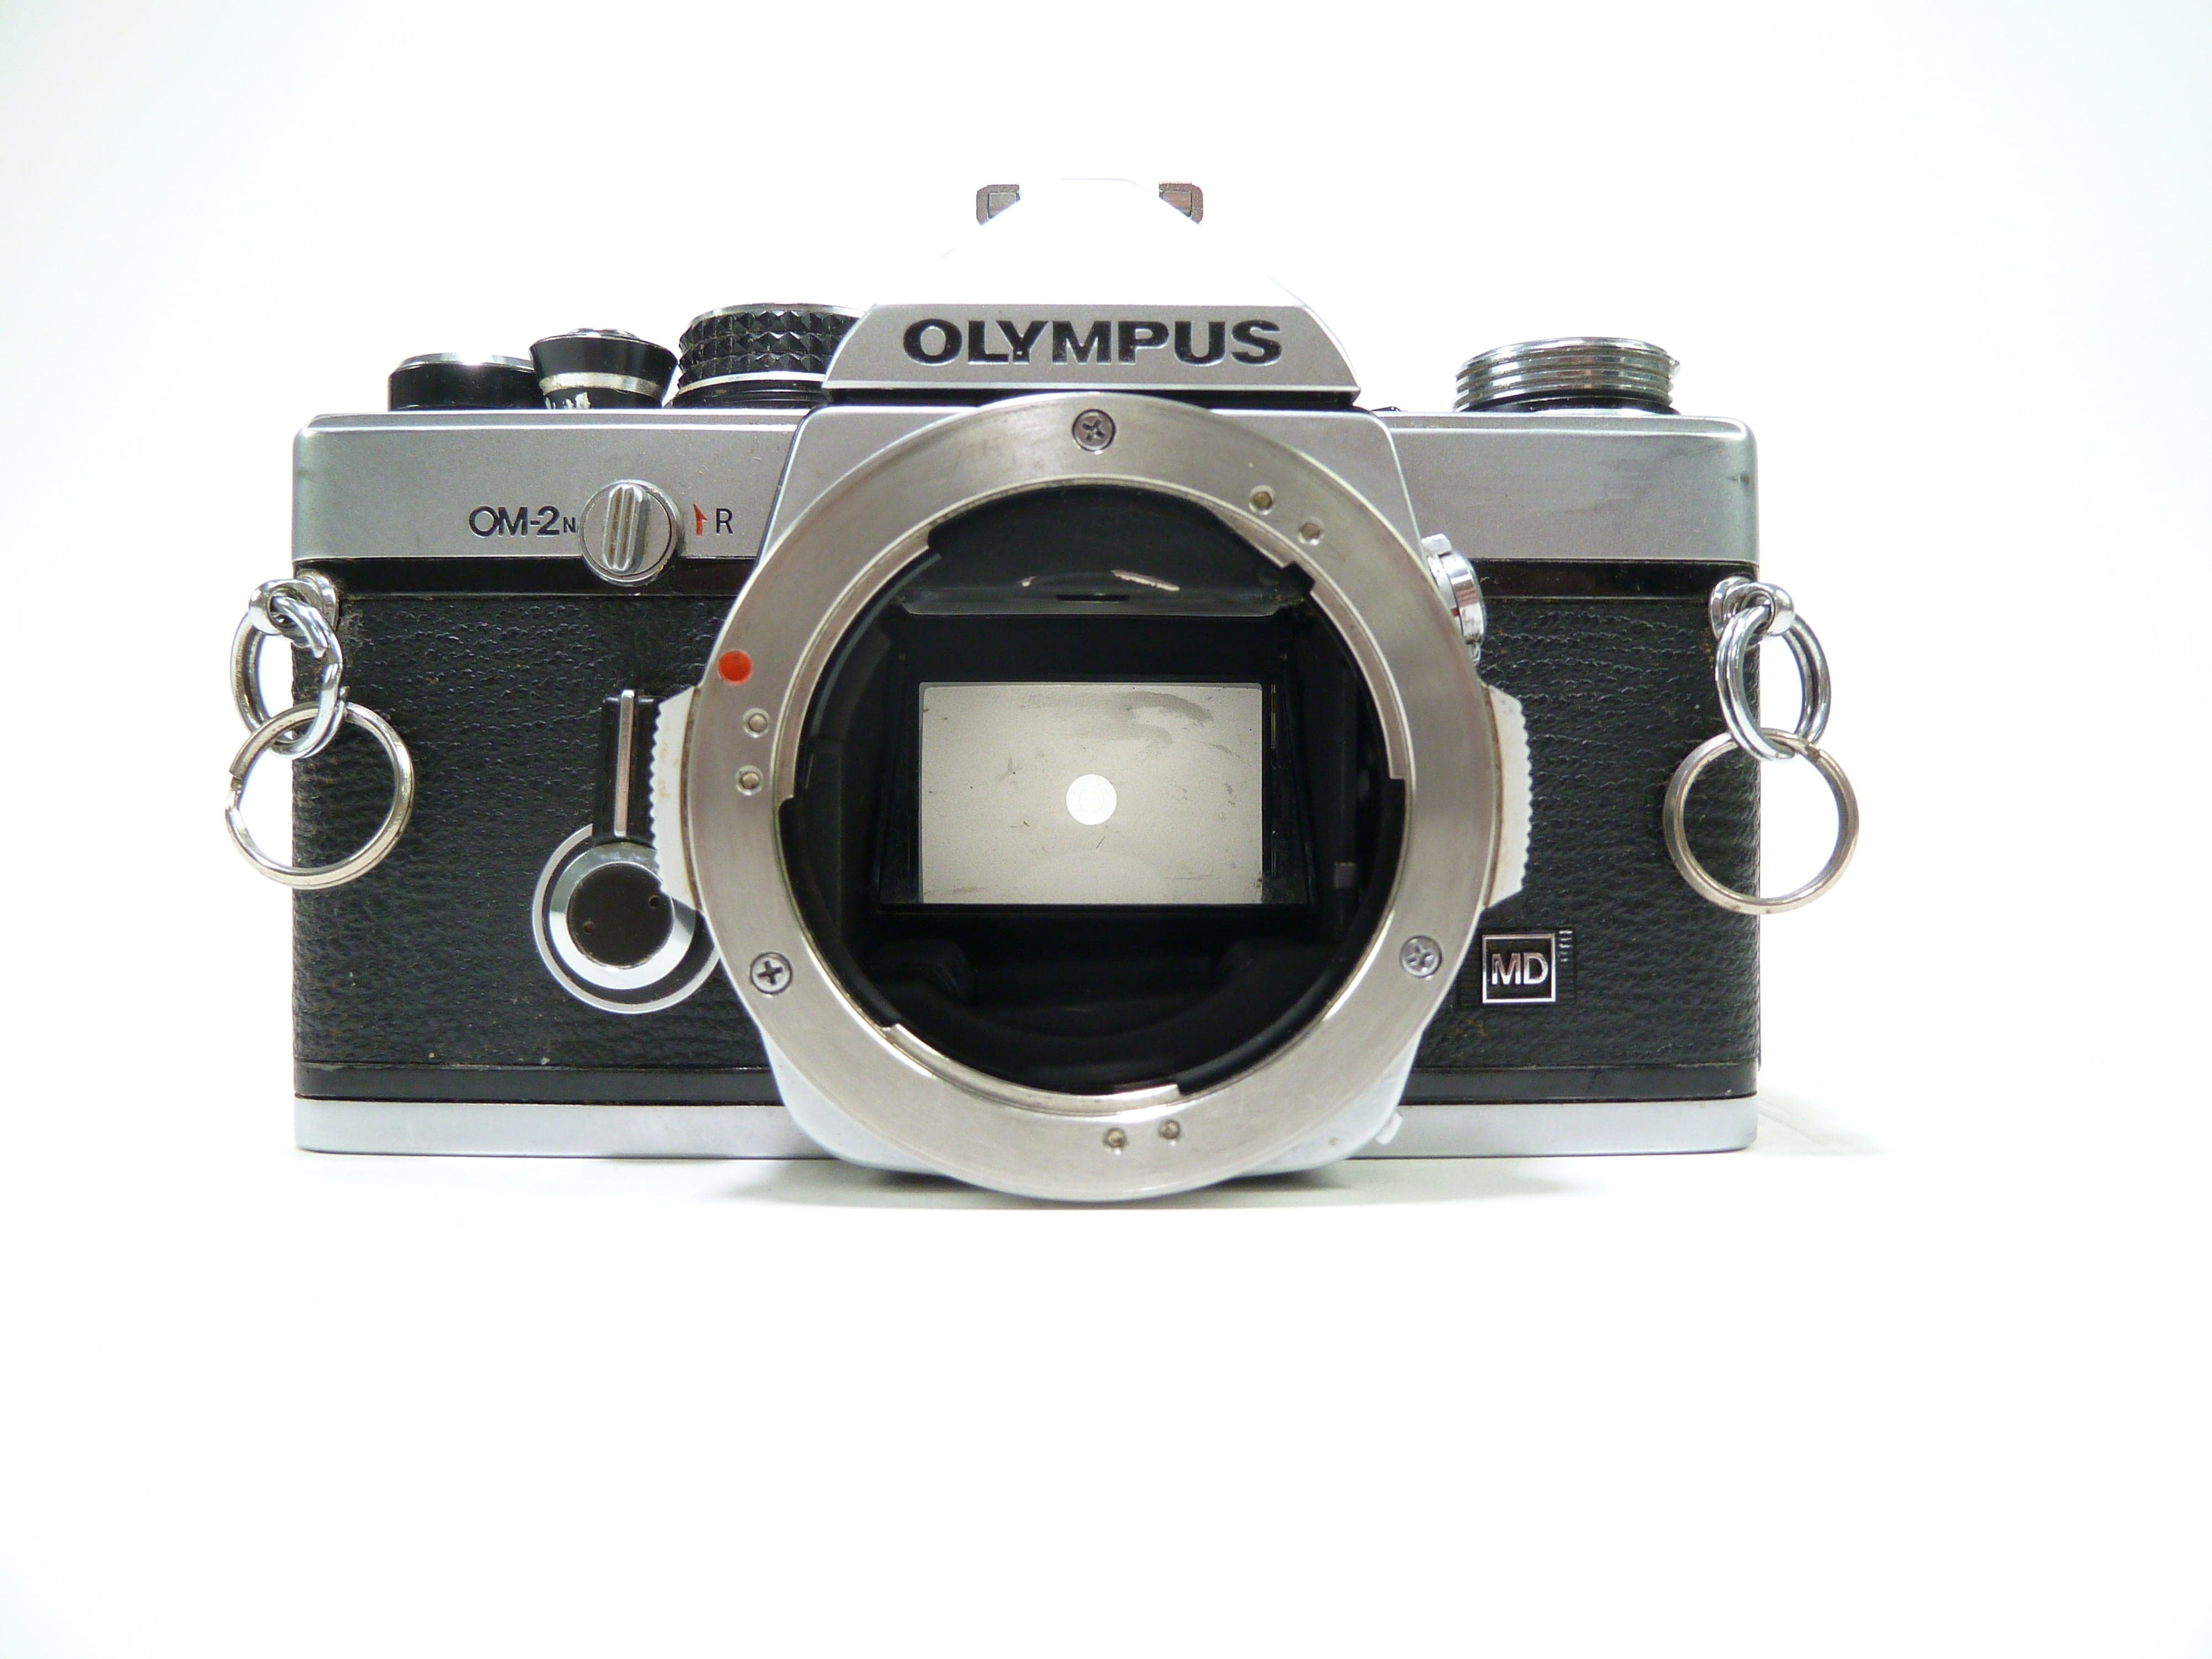 Olympus OM20 SLR 35mm Film Camera with Olympus Zuiko 37-70mm f/4.0